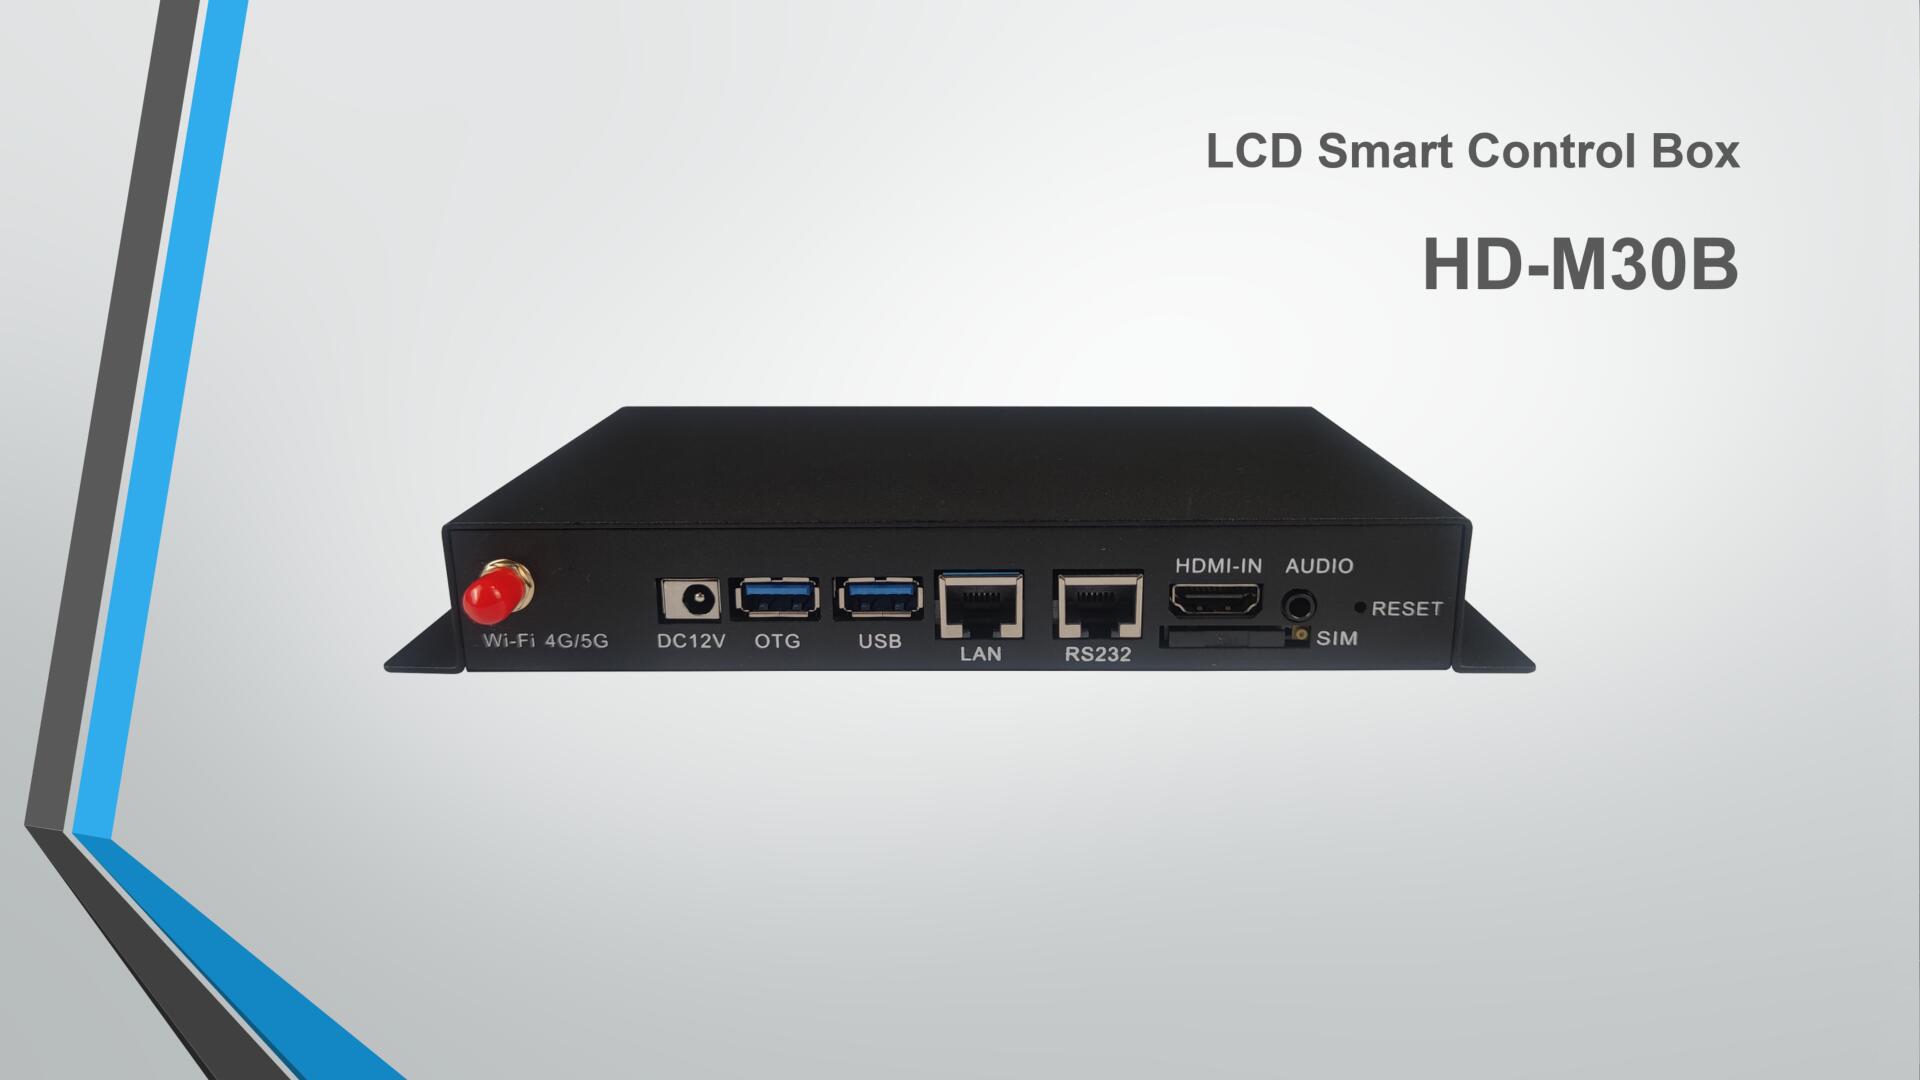 Produsen solusi sistem kontrol tampilan LED profesional | Kartu kendali LCD HD-M30B praktis | Pemasok Huidu